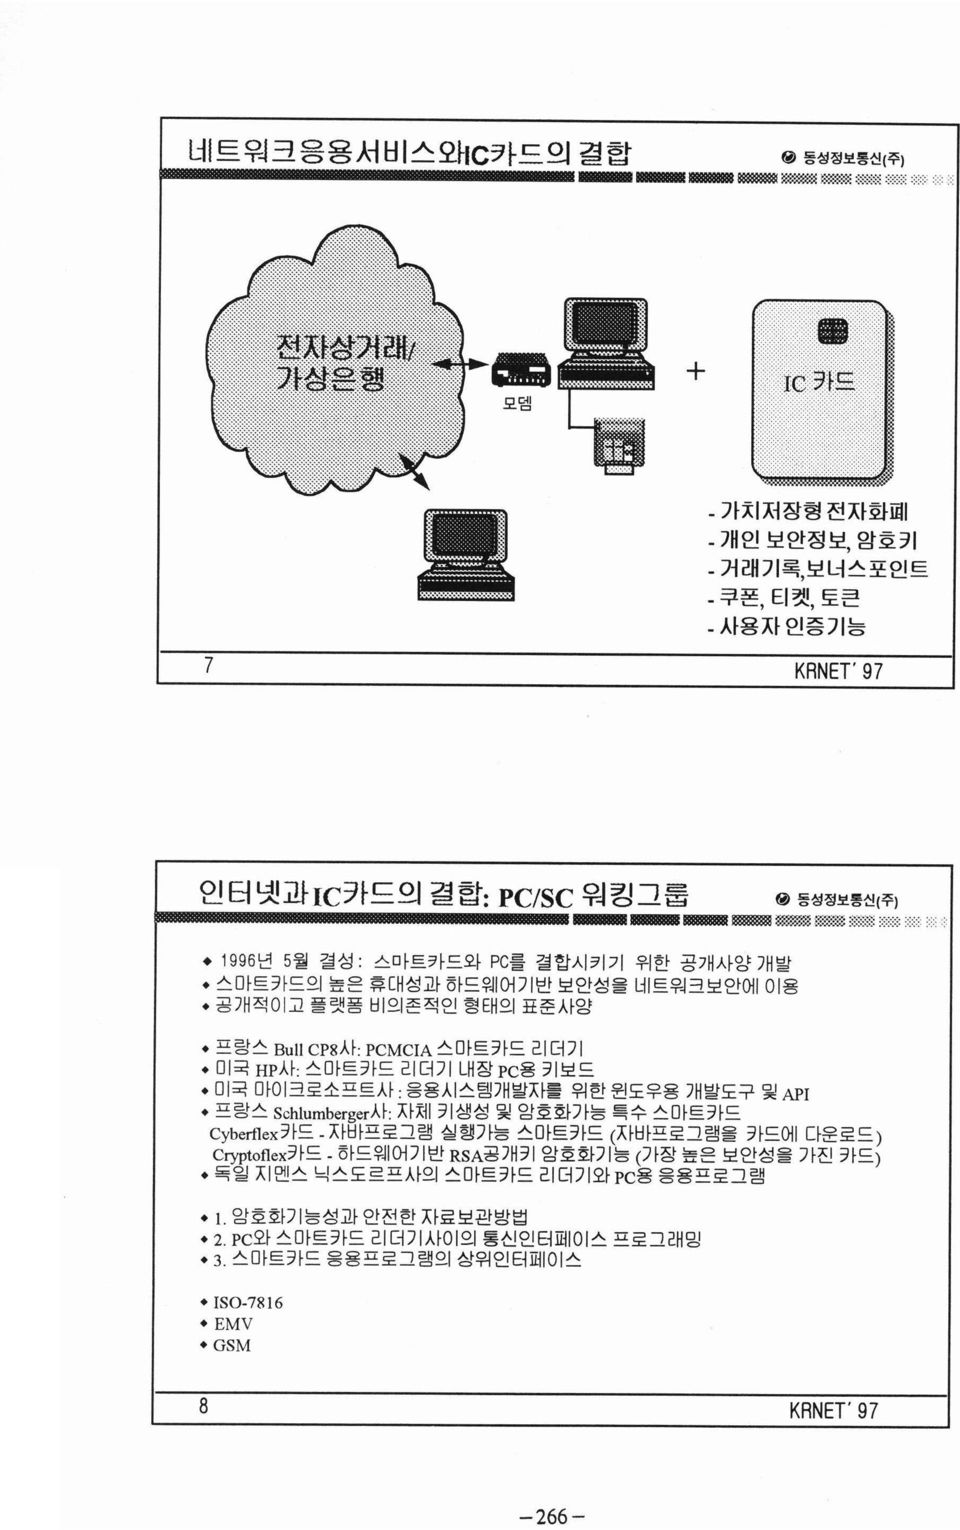 1996 년 5 월 결성 : 스마트카드와 PC를 결합시키기 위한 공개사앙 개발 스마트카드의 높은 휴대성과 하드웨어기반 보안성몰 네트워크보안에 이용 공개적이고 플랫폼 비의존적인 형태의 표준사앙 프랑스 Bu\l CP8 사 PCMCIA 스마트카드 리더기 미국 HP사 : 스마트카드 리더기 내장 PC용 키보드 미국